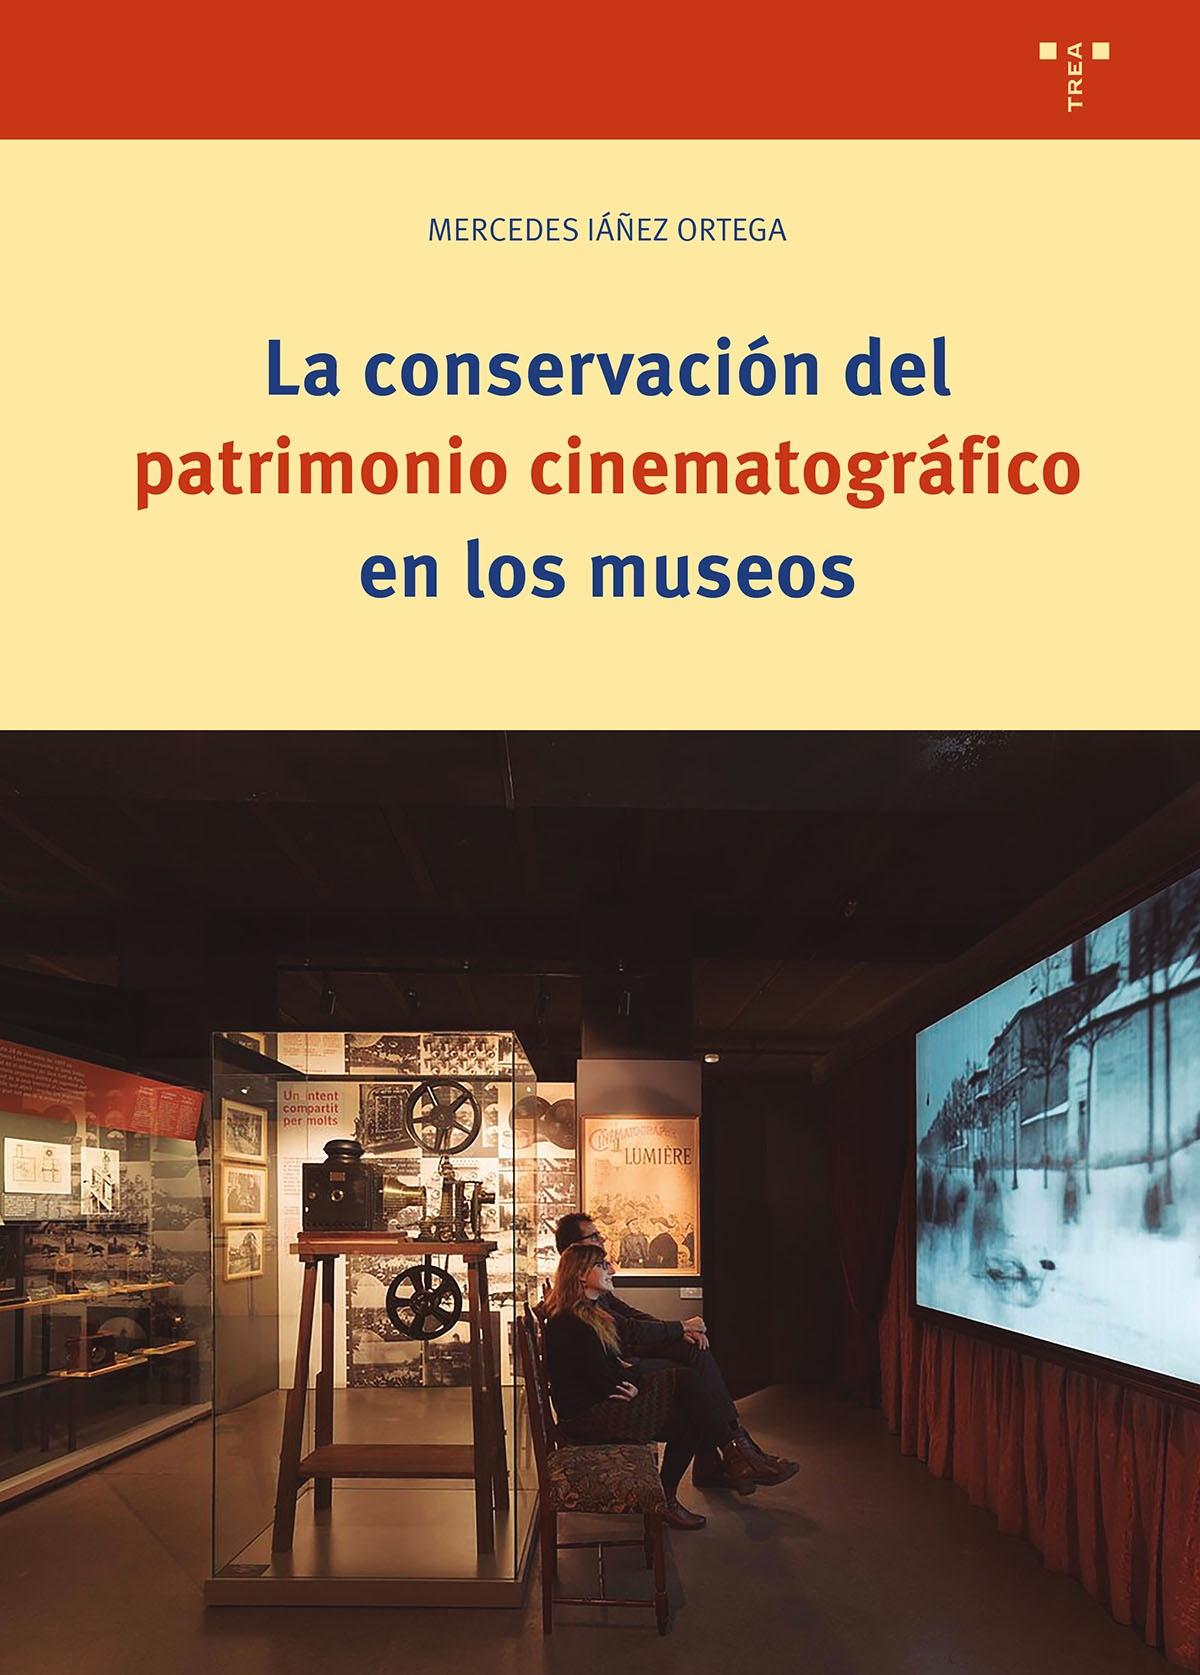 Conservación del patrimonio cinematográfico en los museos.